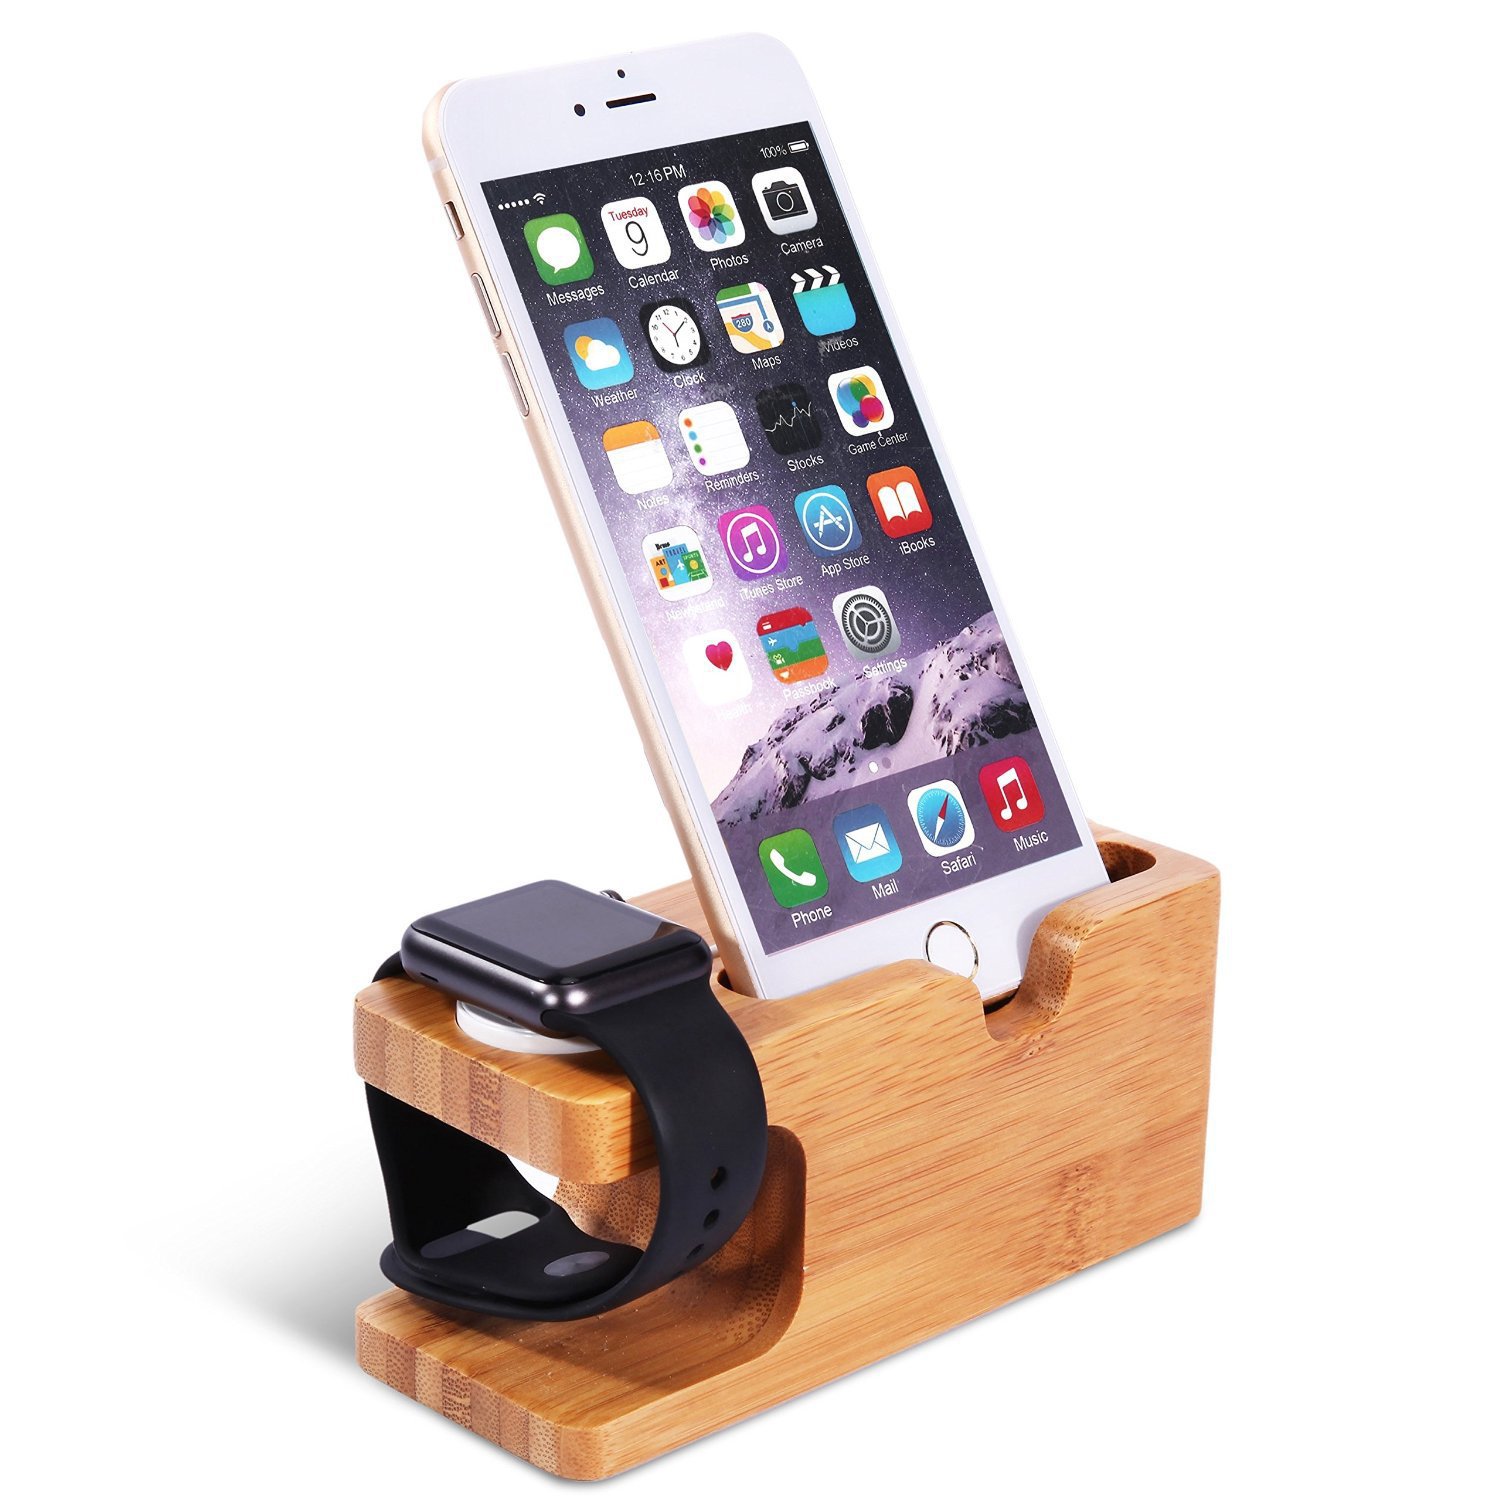 Dock đế sạc gỗ kèm giá đỡ đa năng cho iPhone, Apple Watch, Android Aturos Mini